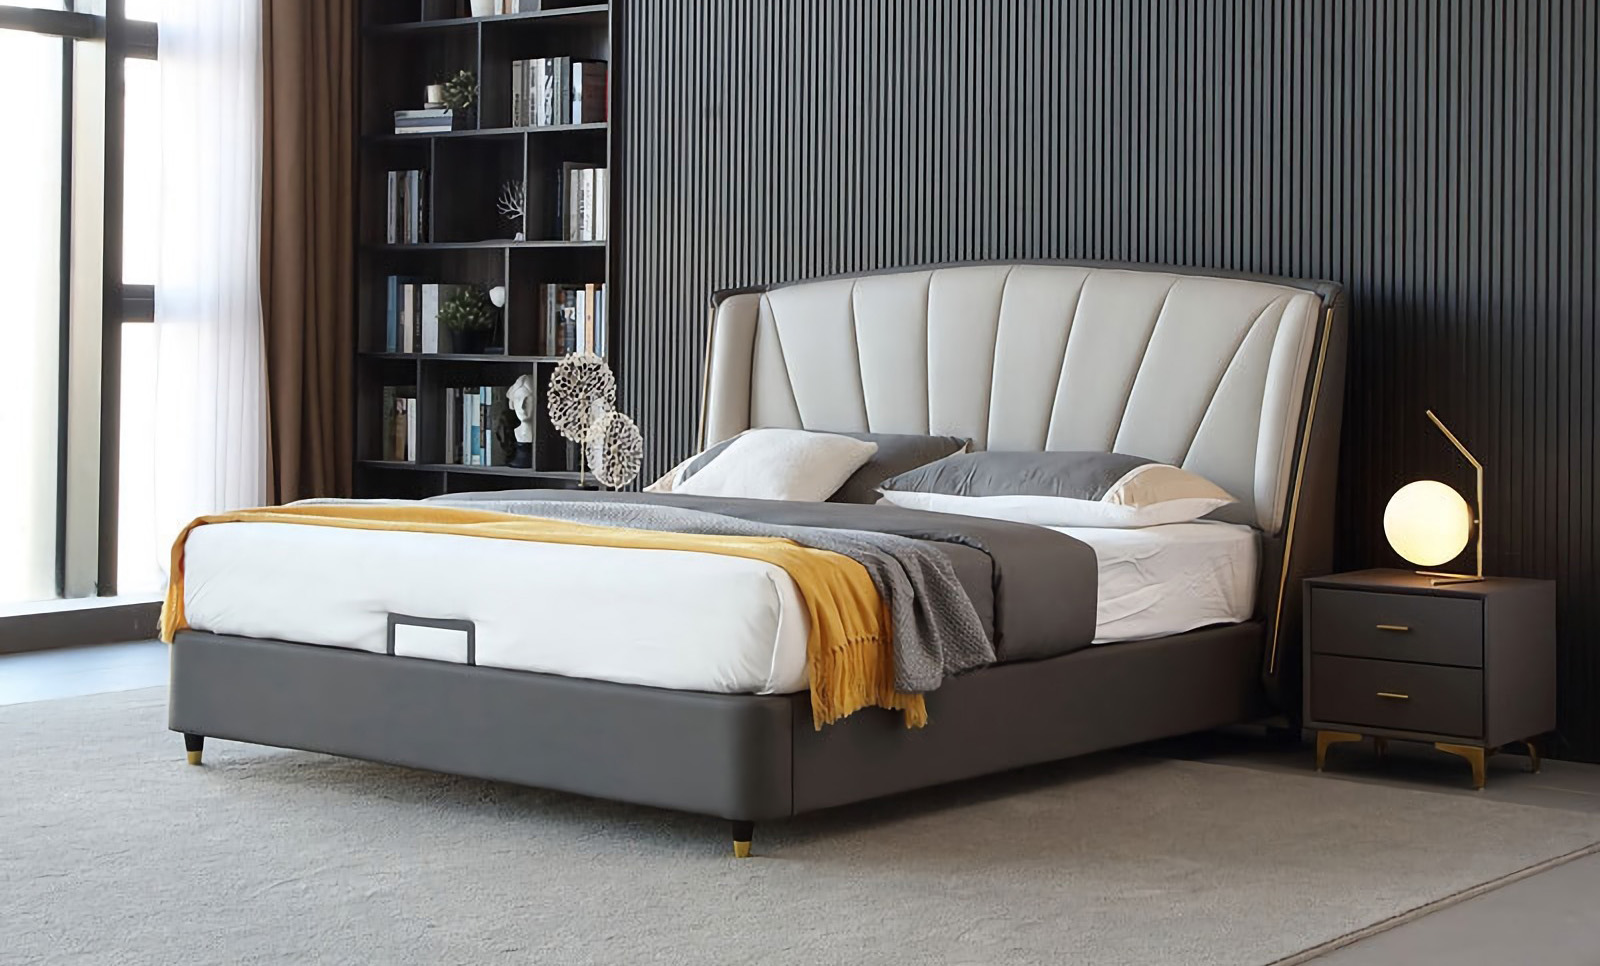 Modern Minimalist Bed Design Features Of Modern Minimalist Bed.